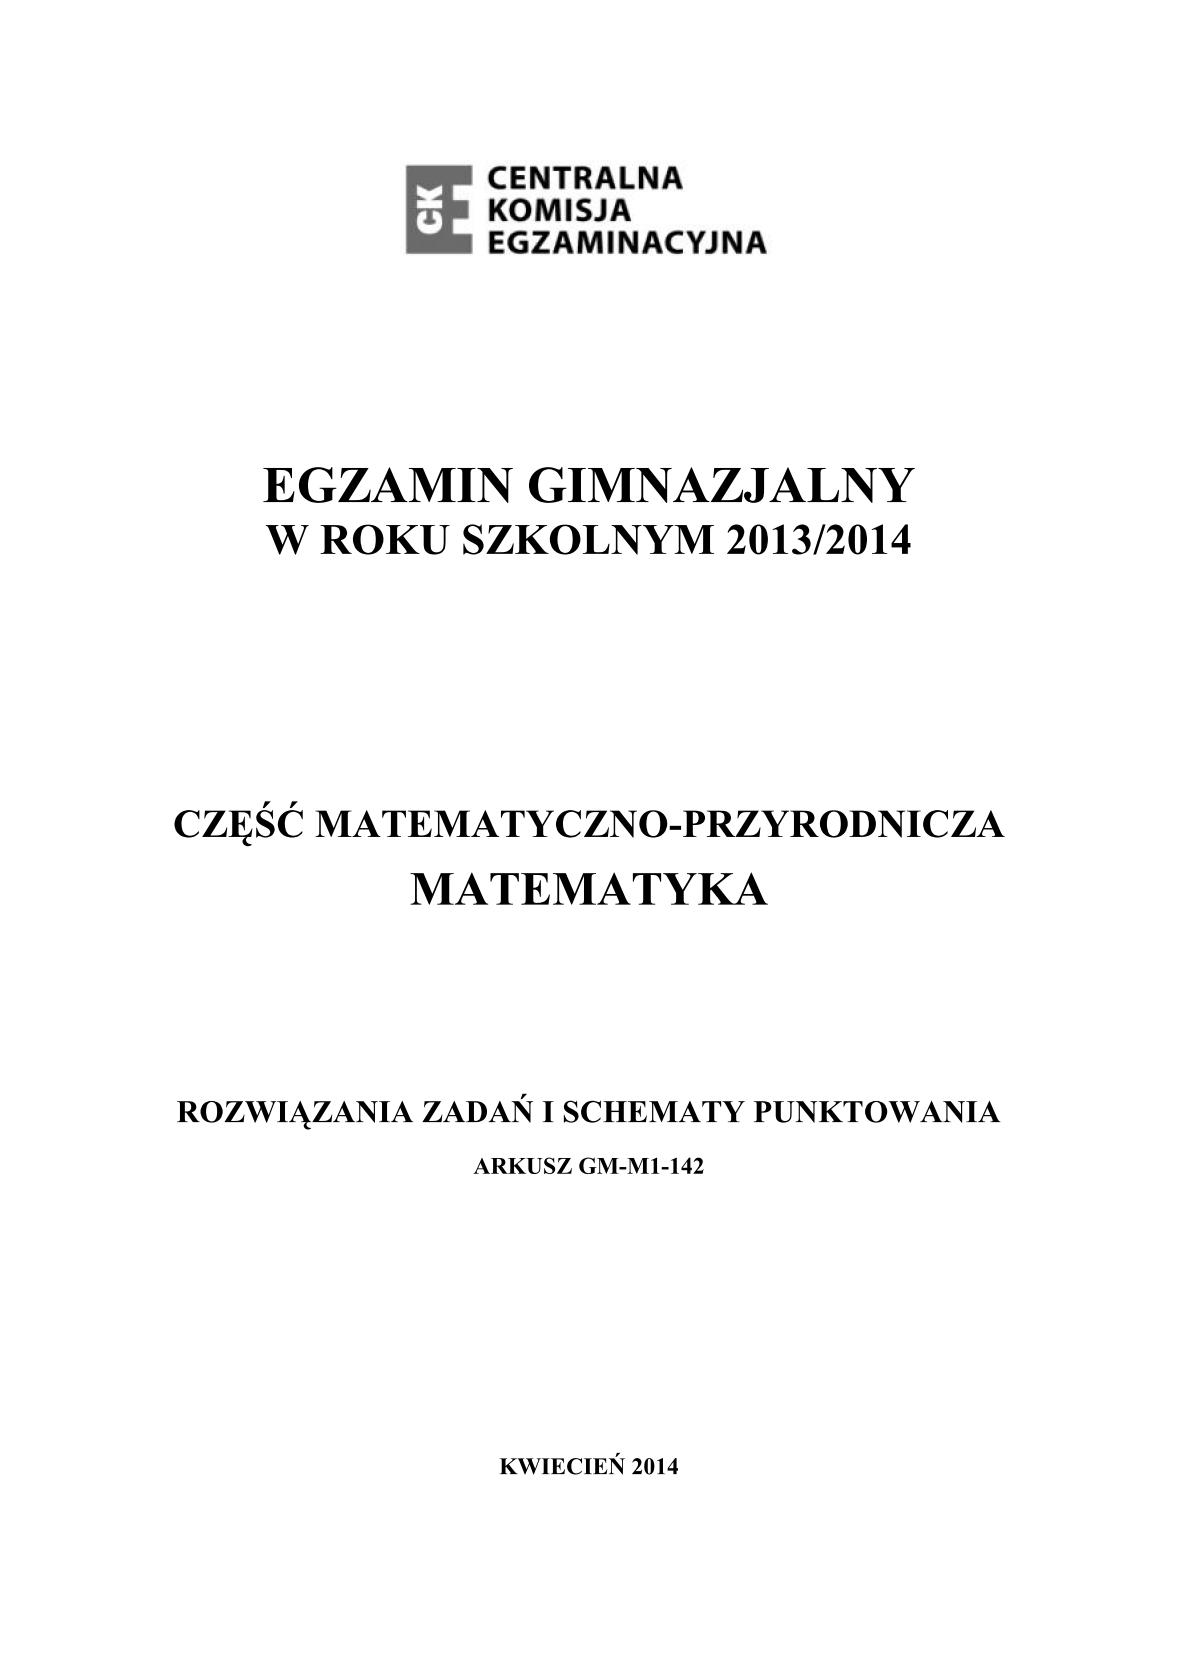 odpowiedzi-matematyka-egzamin-gimnazjalny-24.04.2014-str.1